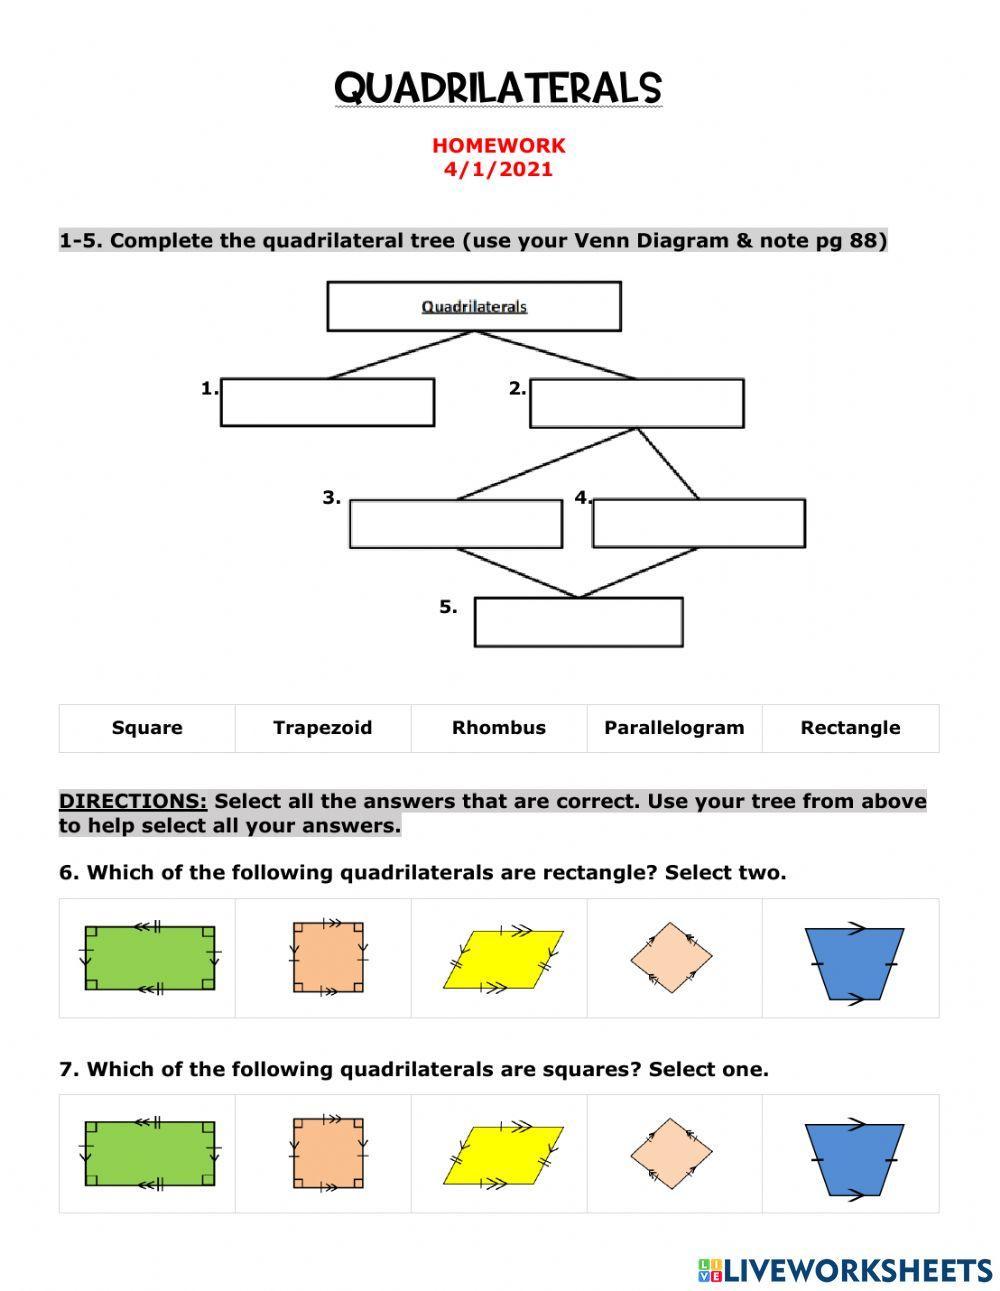 Quadrilaterals Homework -4